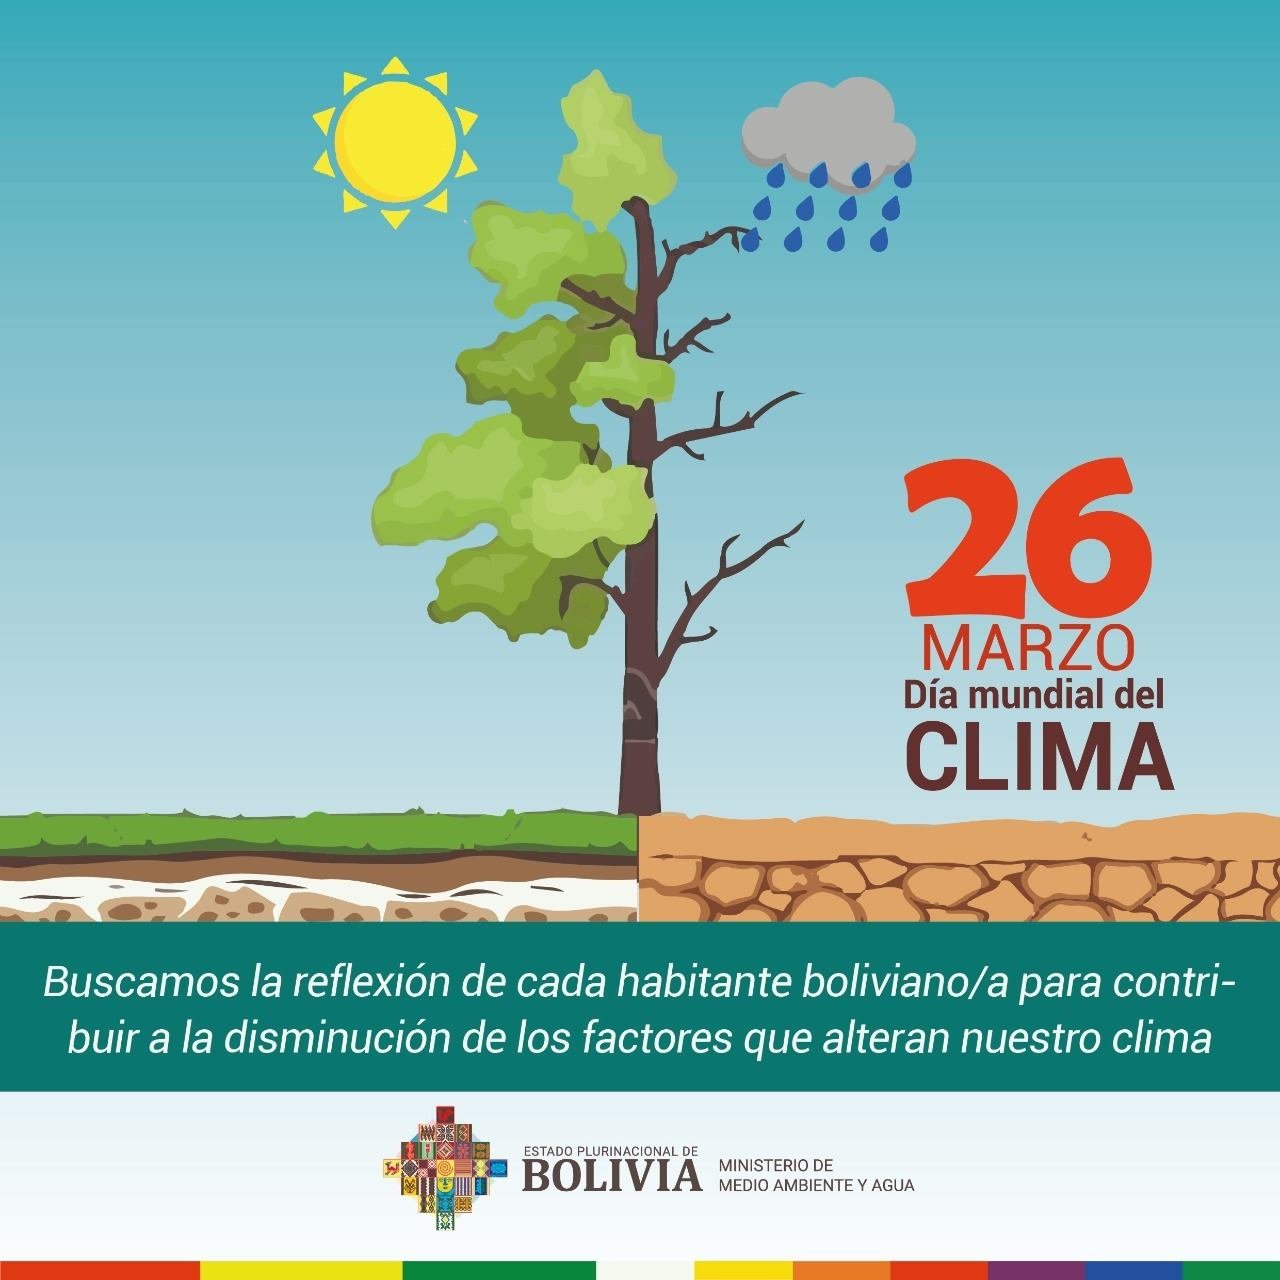 Min. Medio Ambiente y Agua on Twitter: "Hoy se celebra el #DíaMundialDelClima, con el fin de promover ambiental en temas como el cambio climático, el marco de los